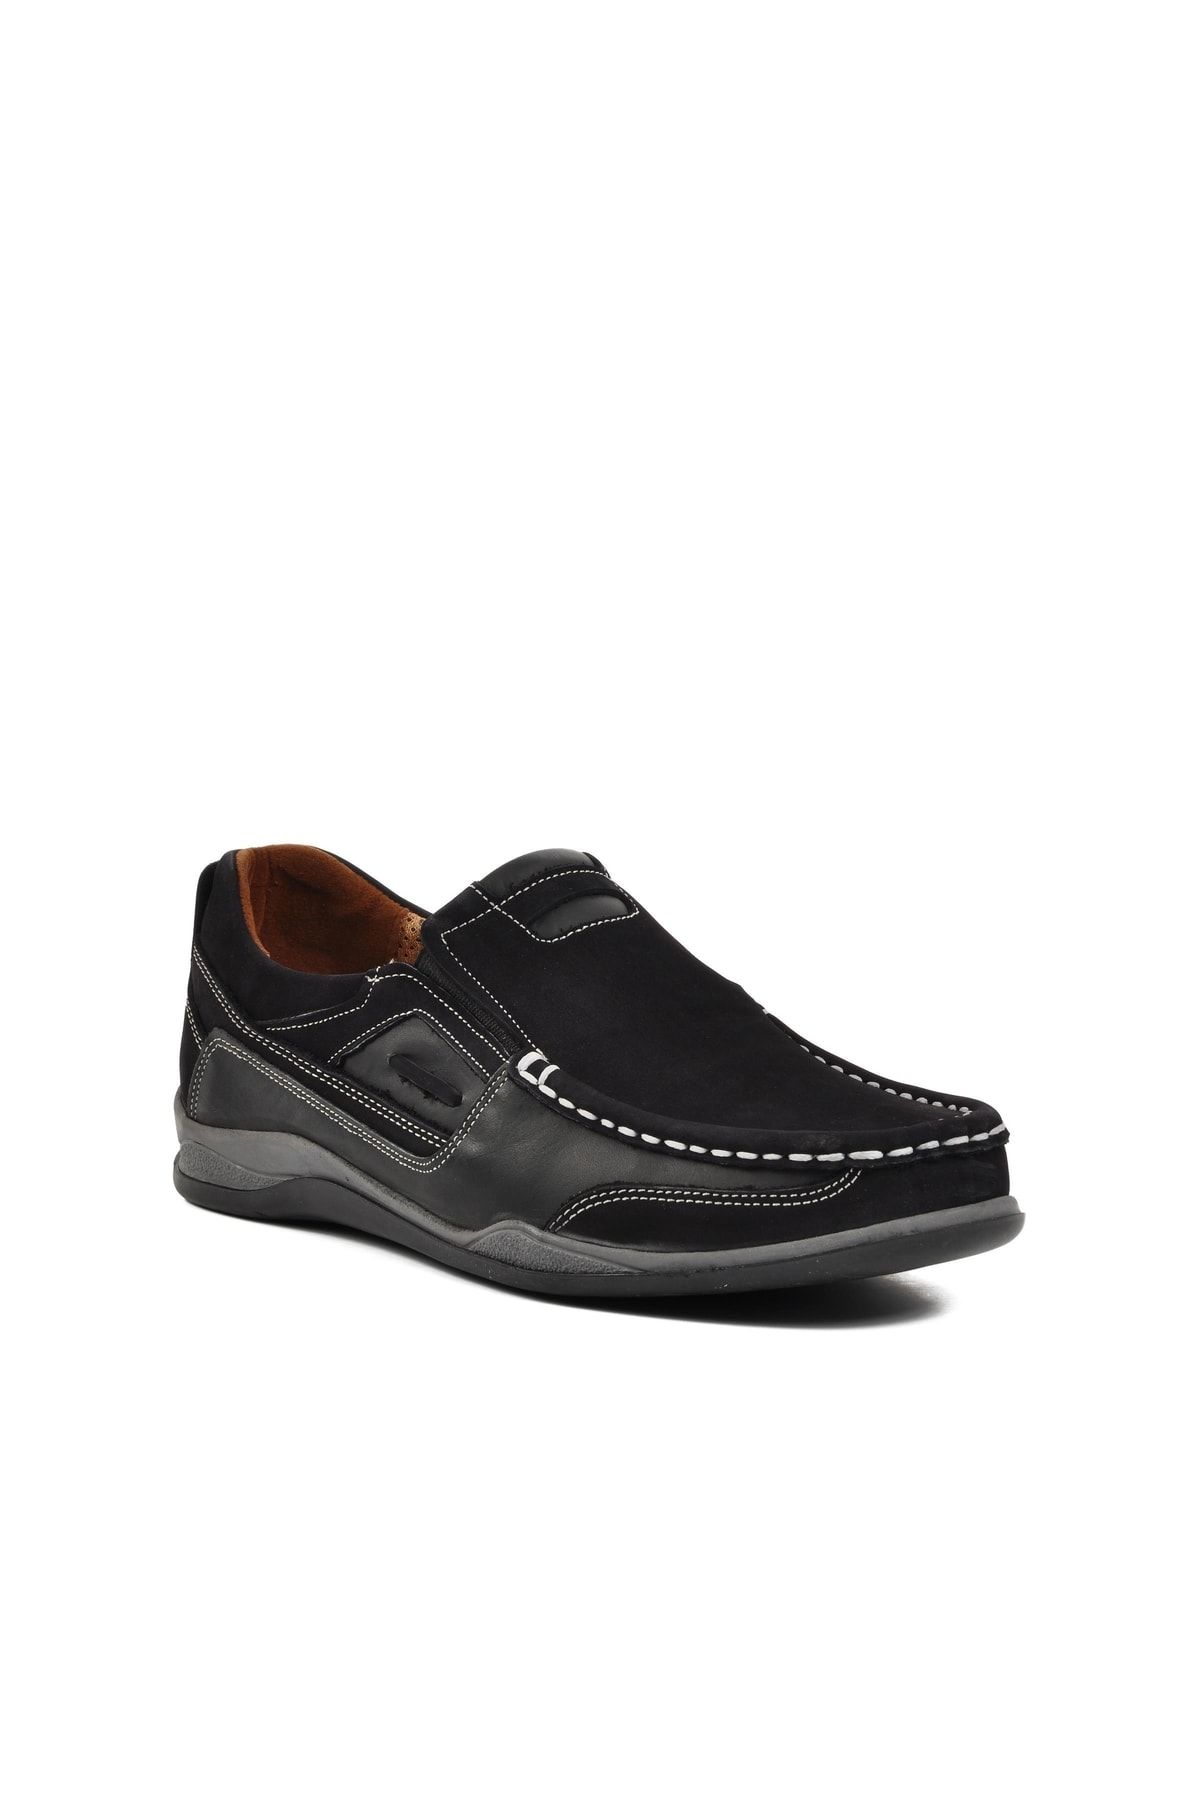 CHOPPER Cpr-22961 Siyah Erkek Günlük Ayakkabı